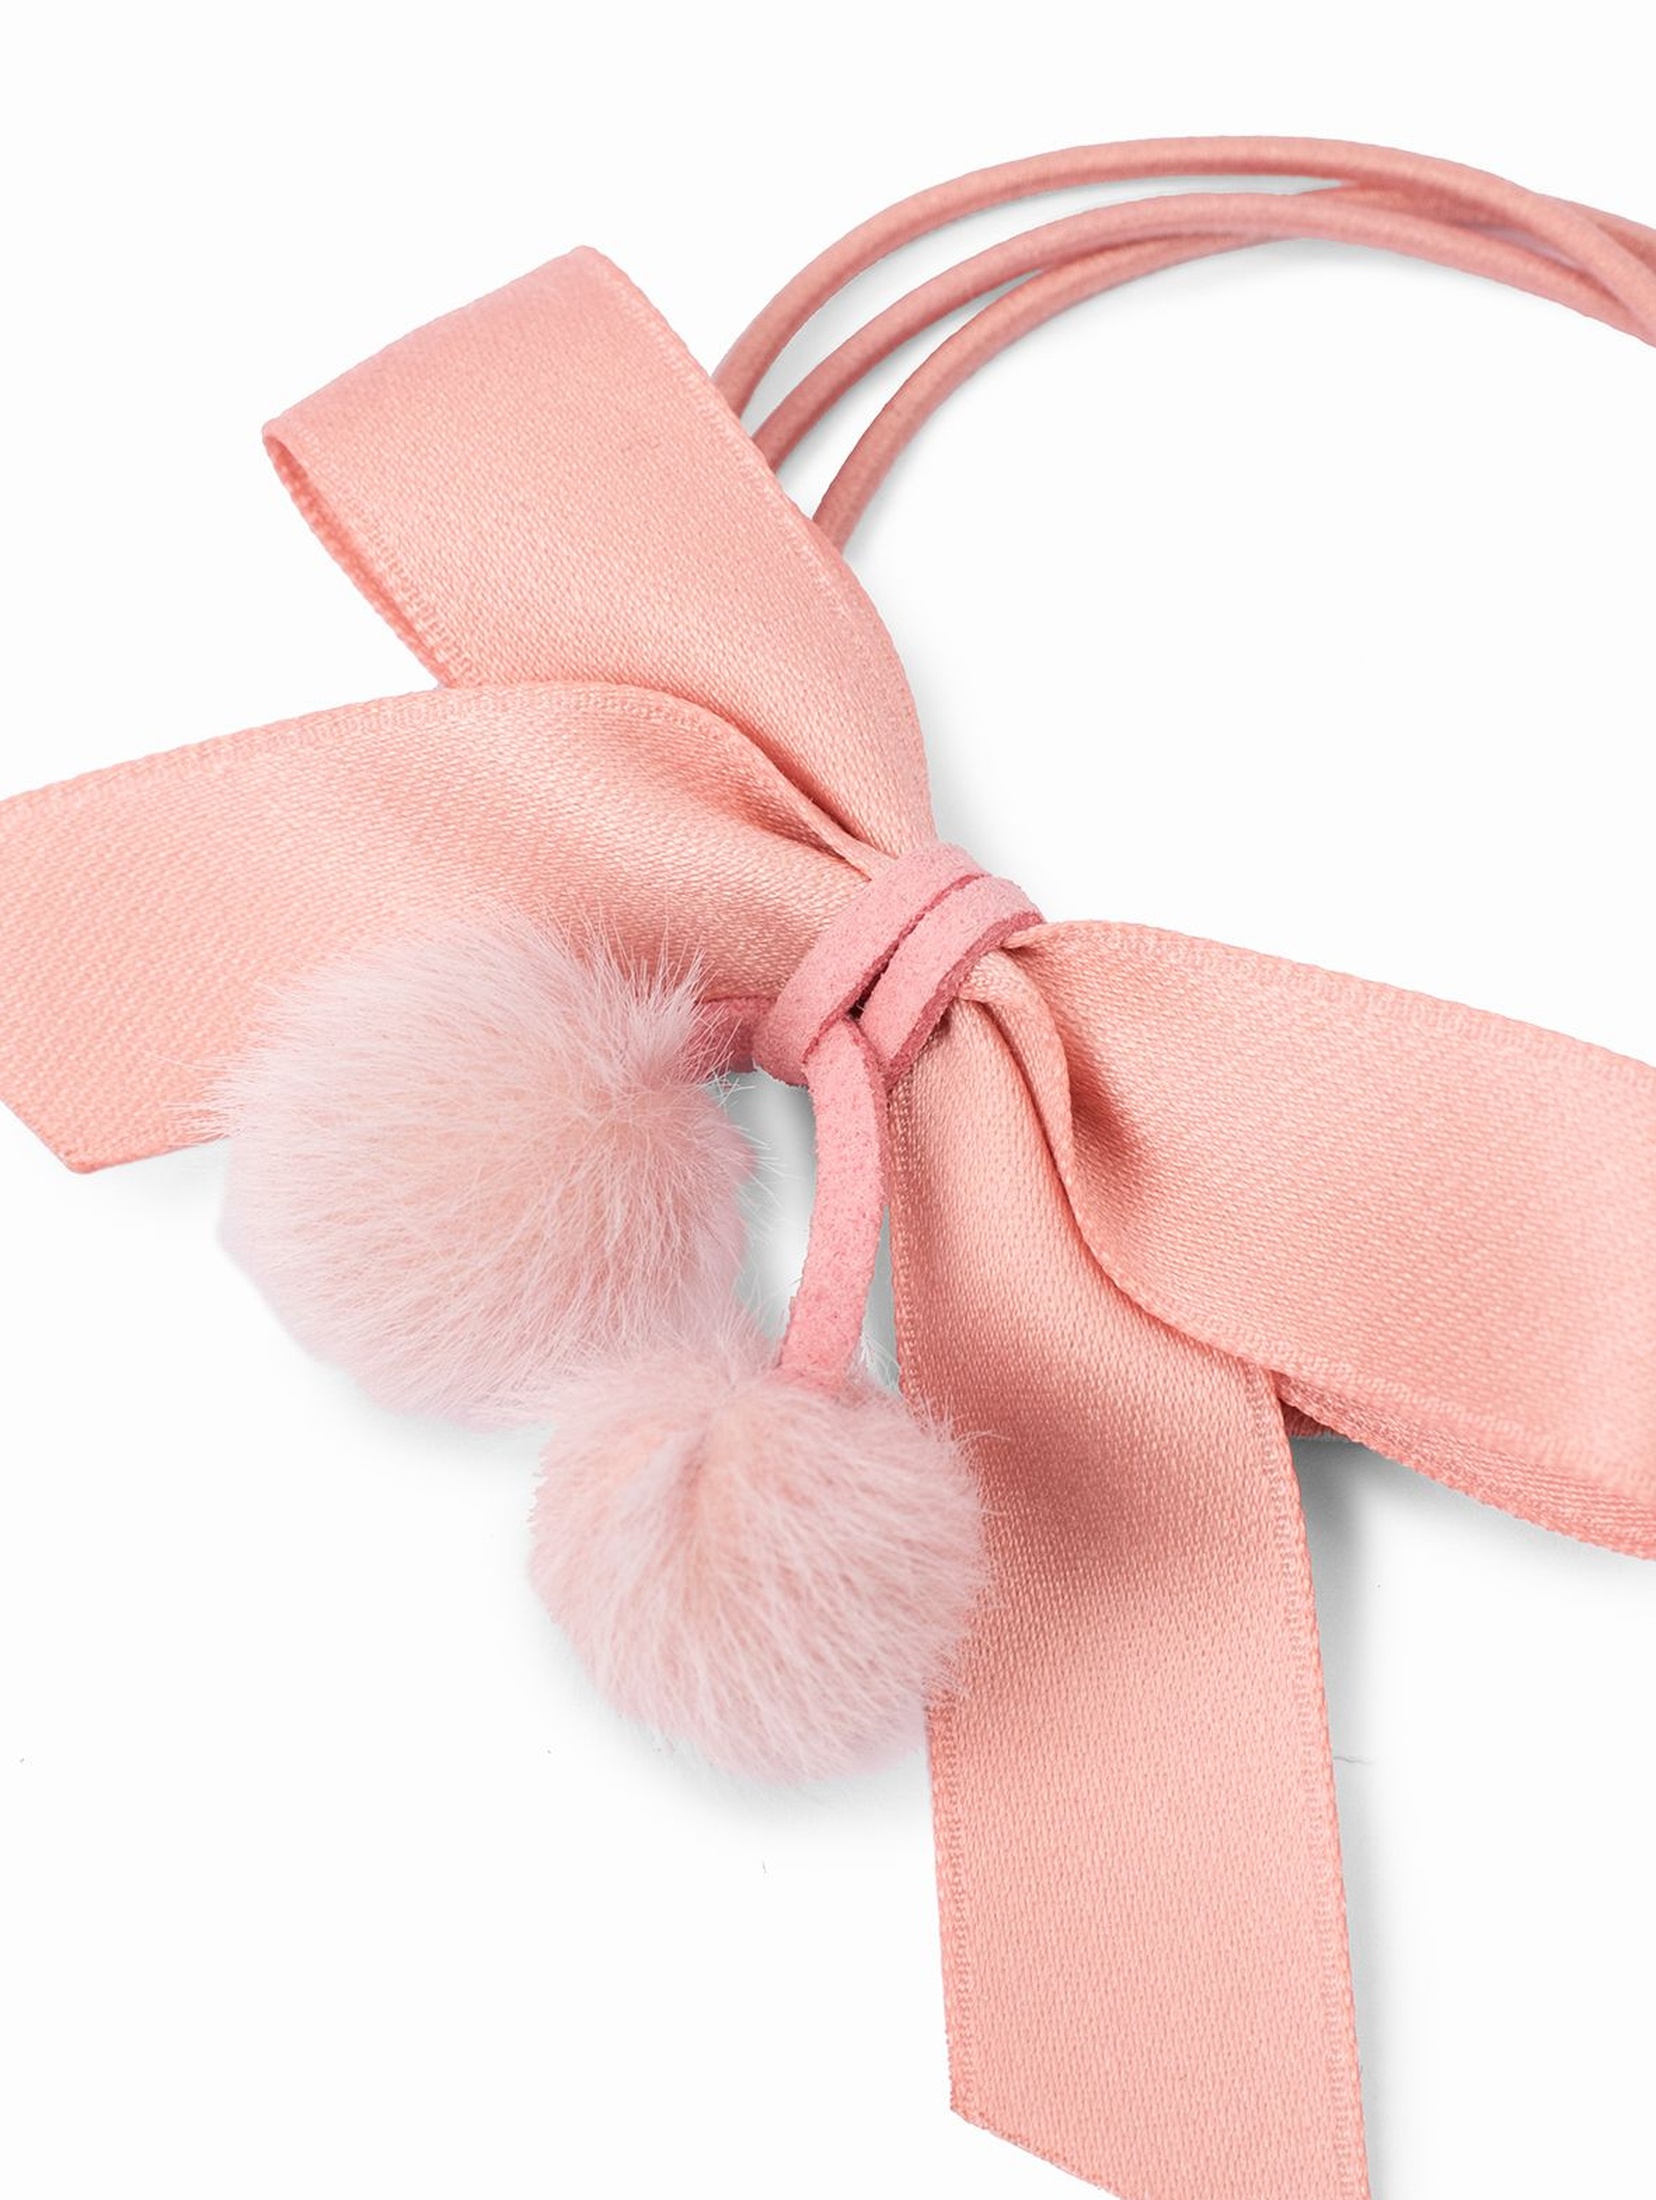 Gumka do włosów dla dziewczynki w kształcie kokardki - różowa